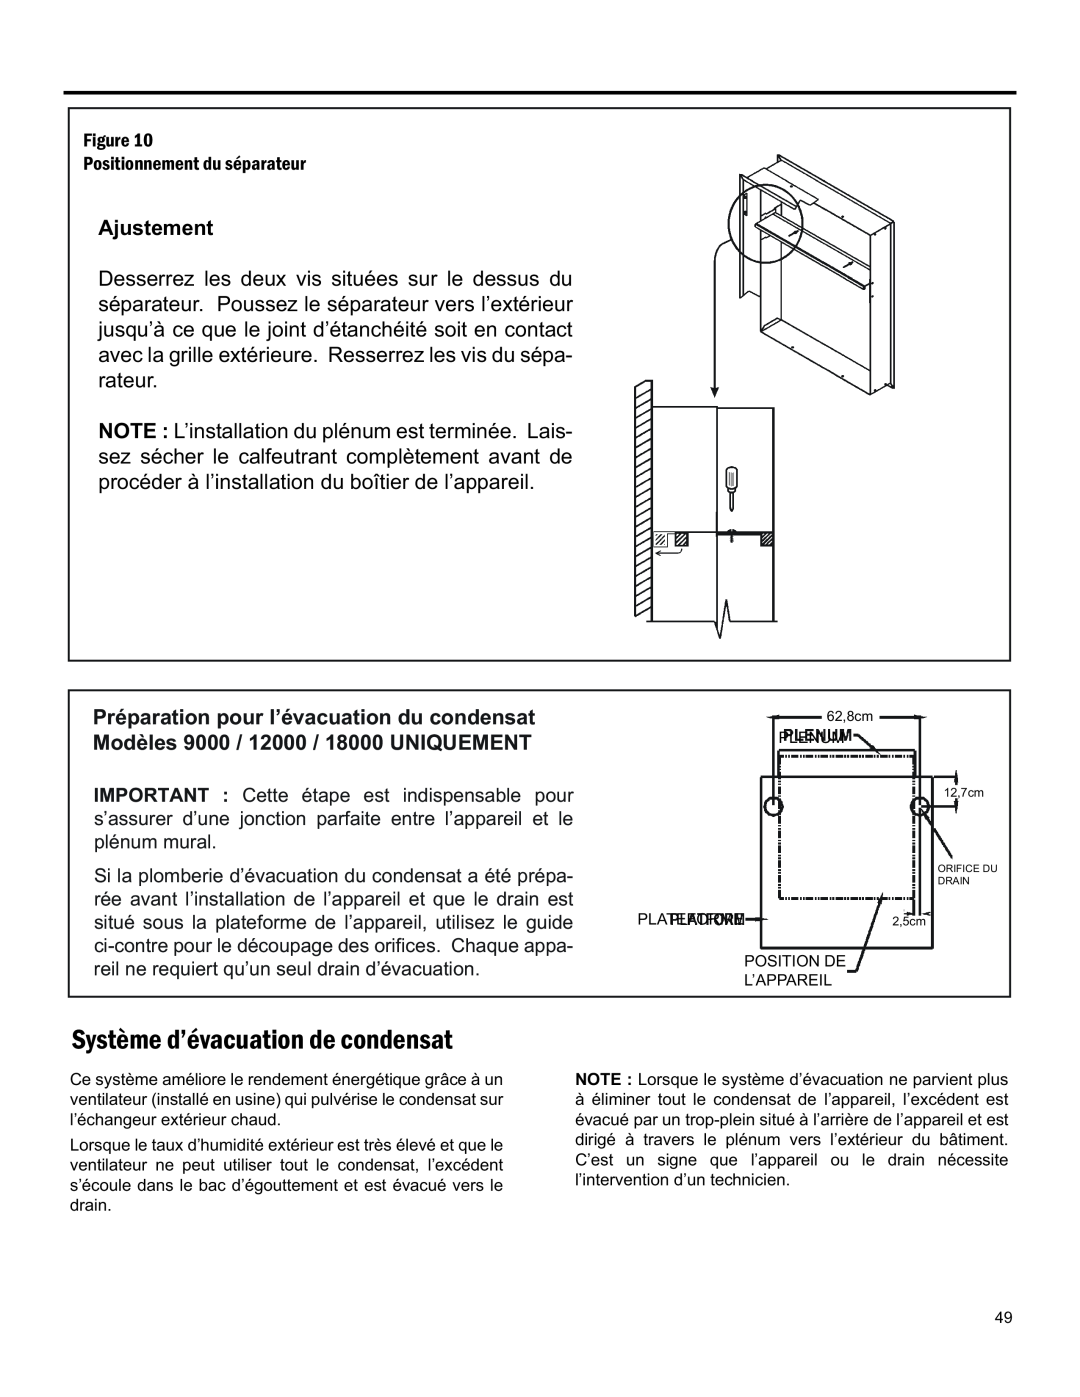 Friedrich 920-075-13 (1-11) operation manual Ajustement, Préparation pour l’évacuation du condensat, Plénum Mural 